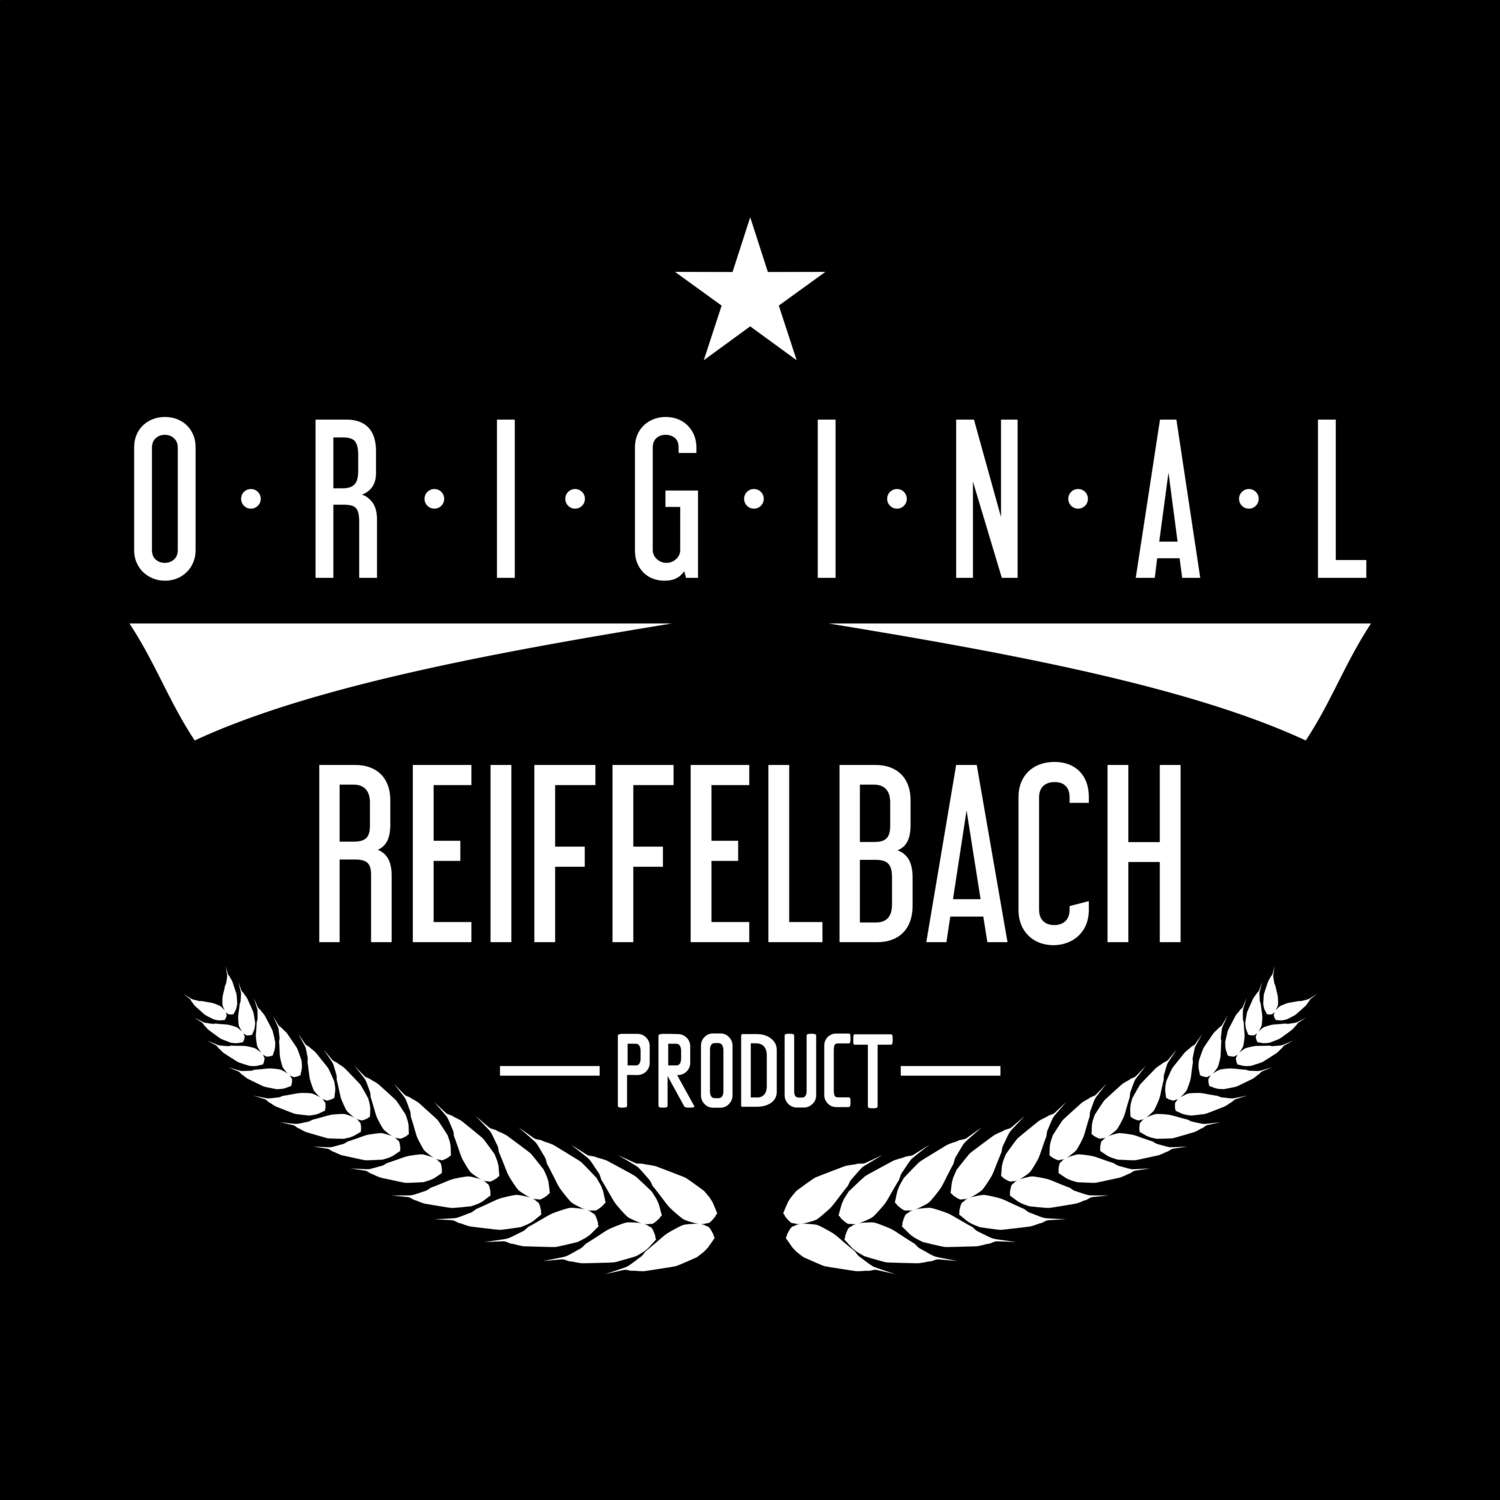 Reiffelbach T-Shirt »Original Product«